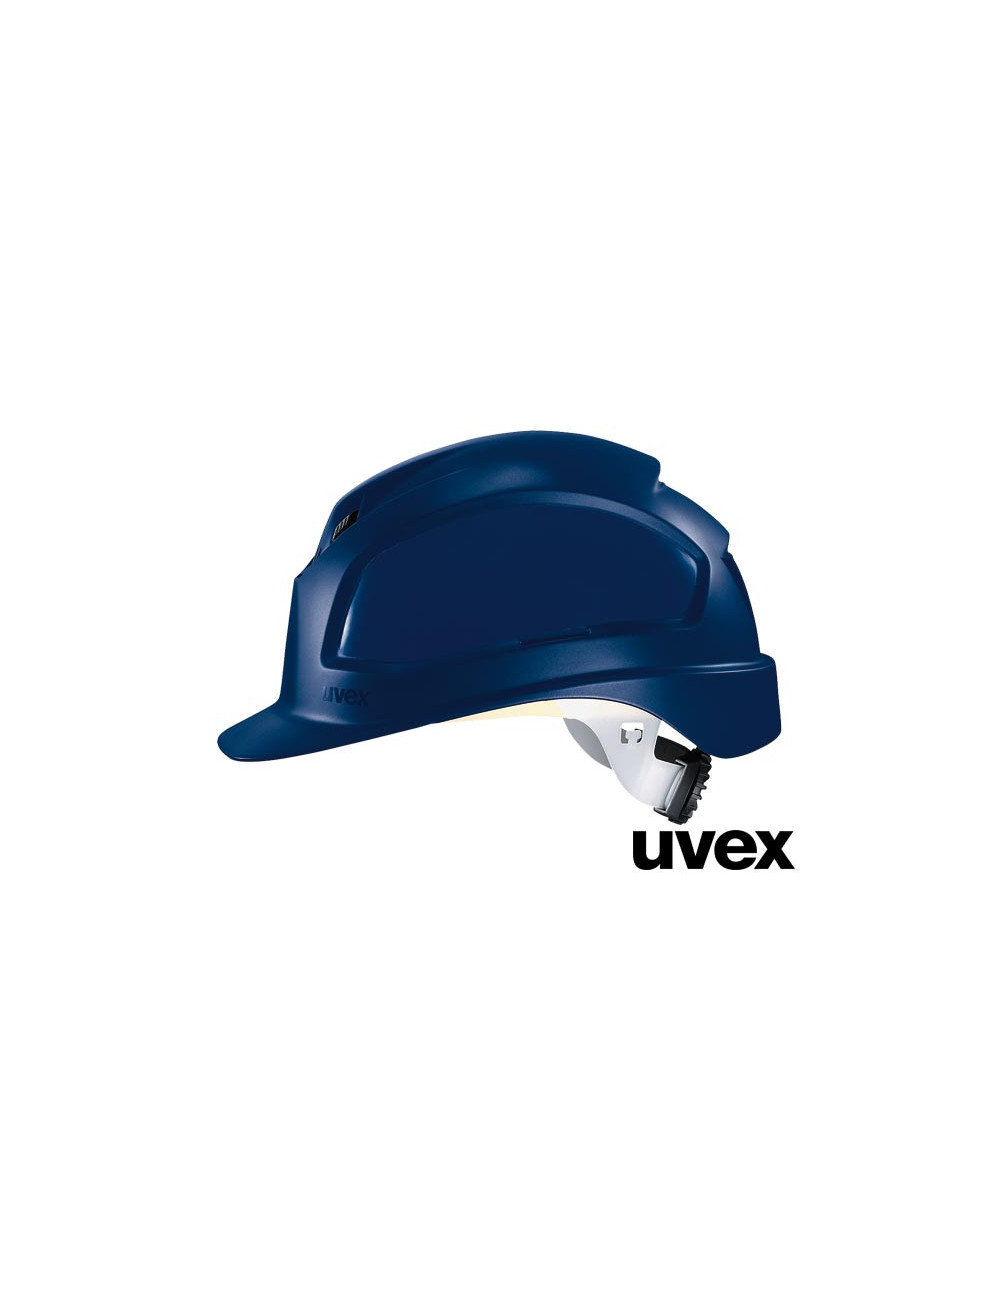 Helmet ux-kas-pheos n blue Uvex